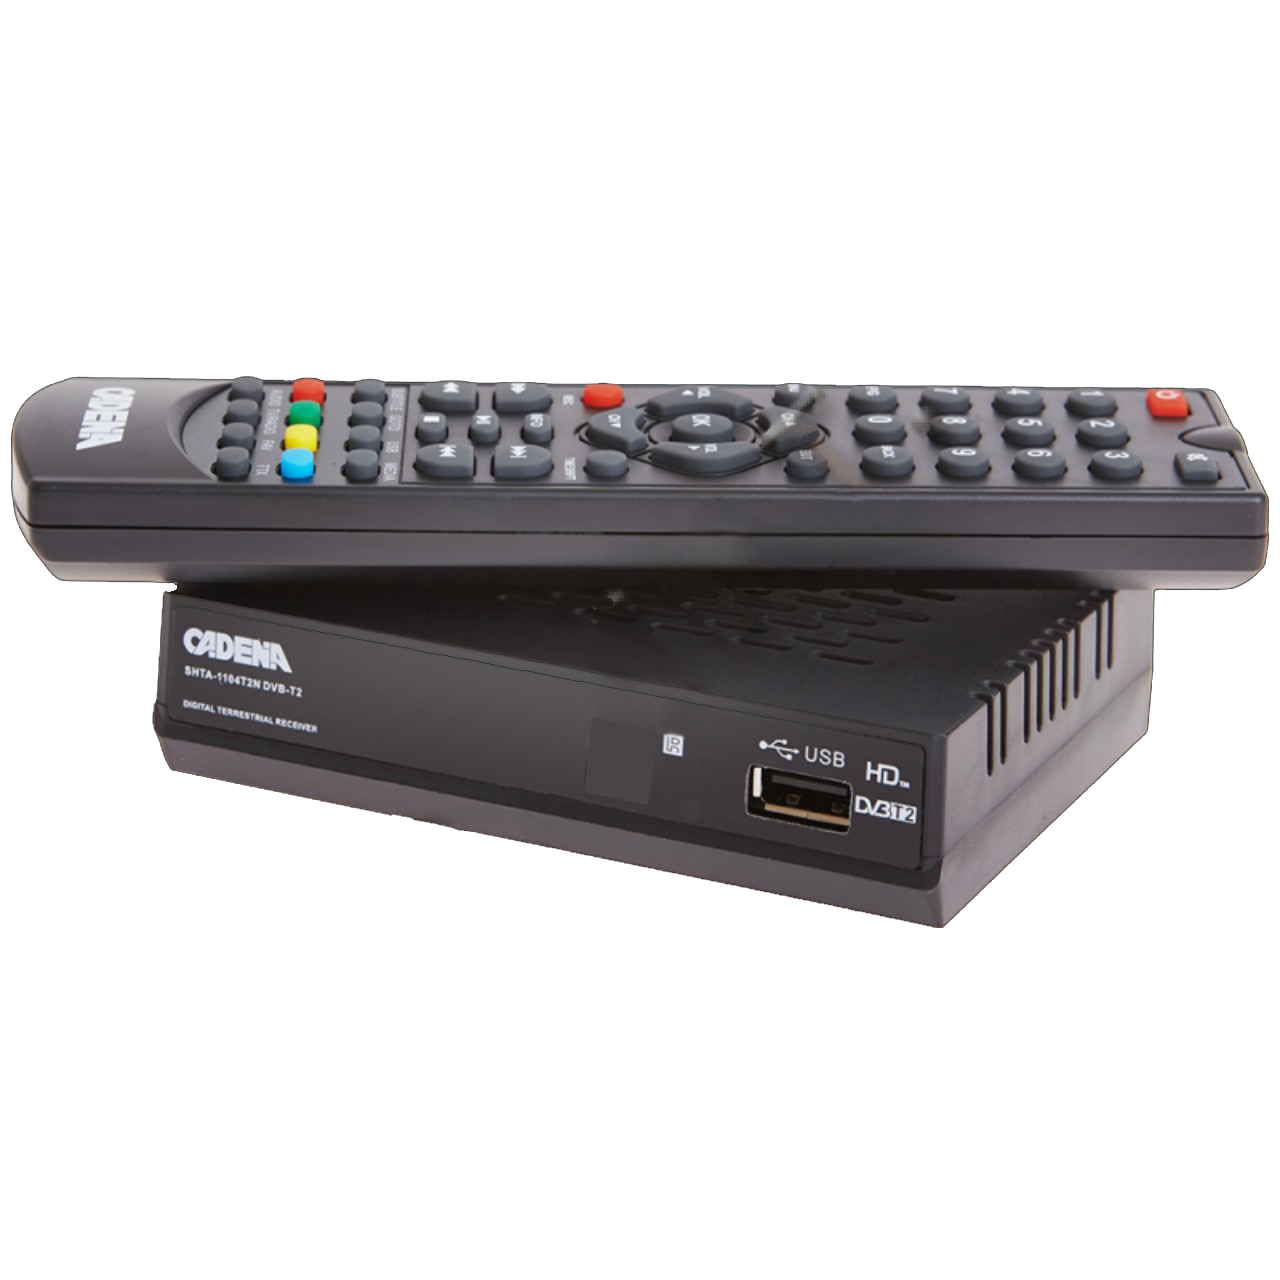 Приемник (ресивер) цифровой эфирный (приставка) CADENA 1104T2N DVB-T2